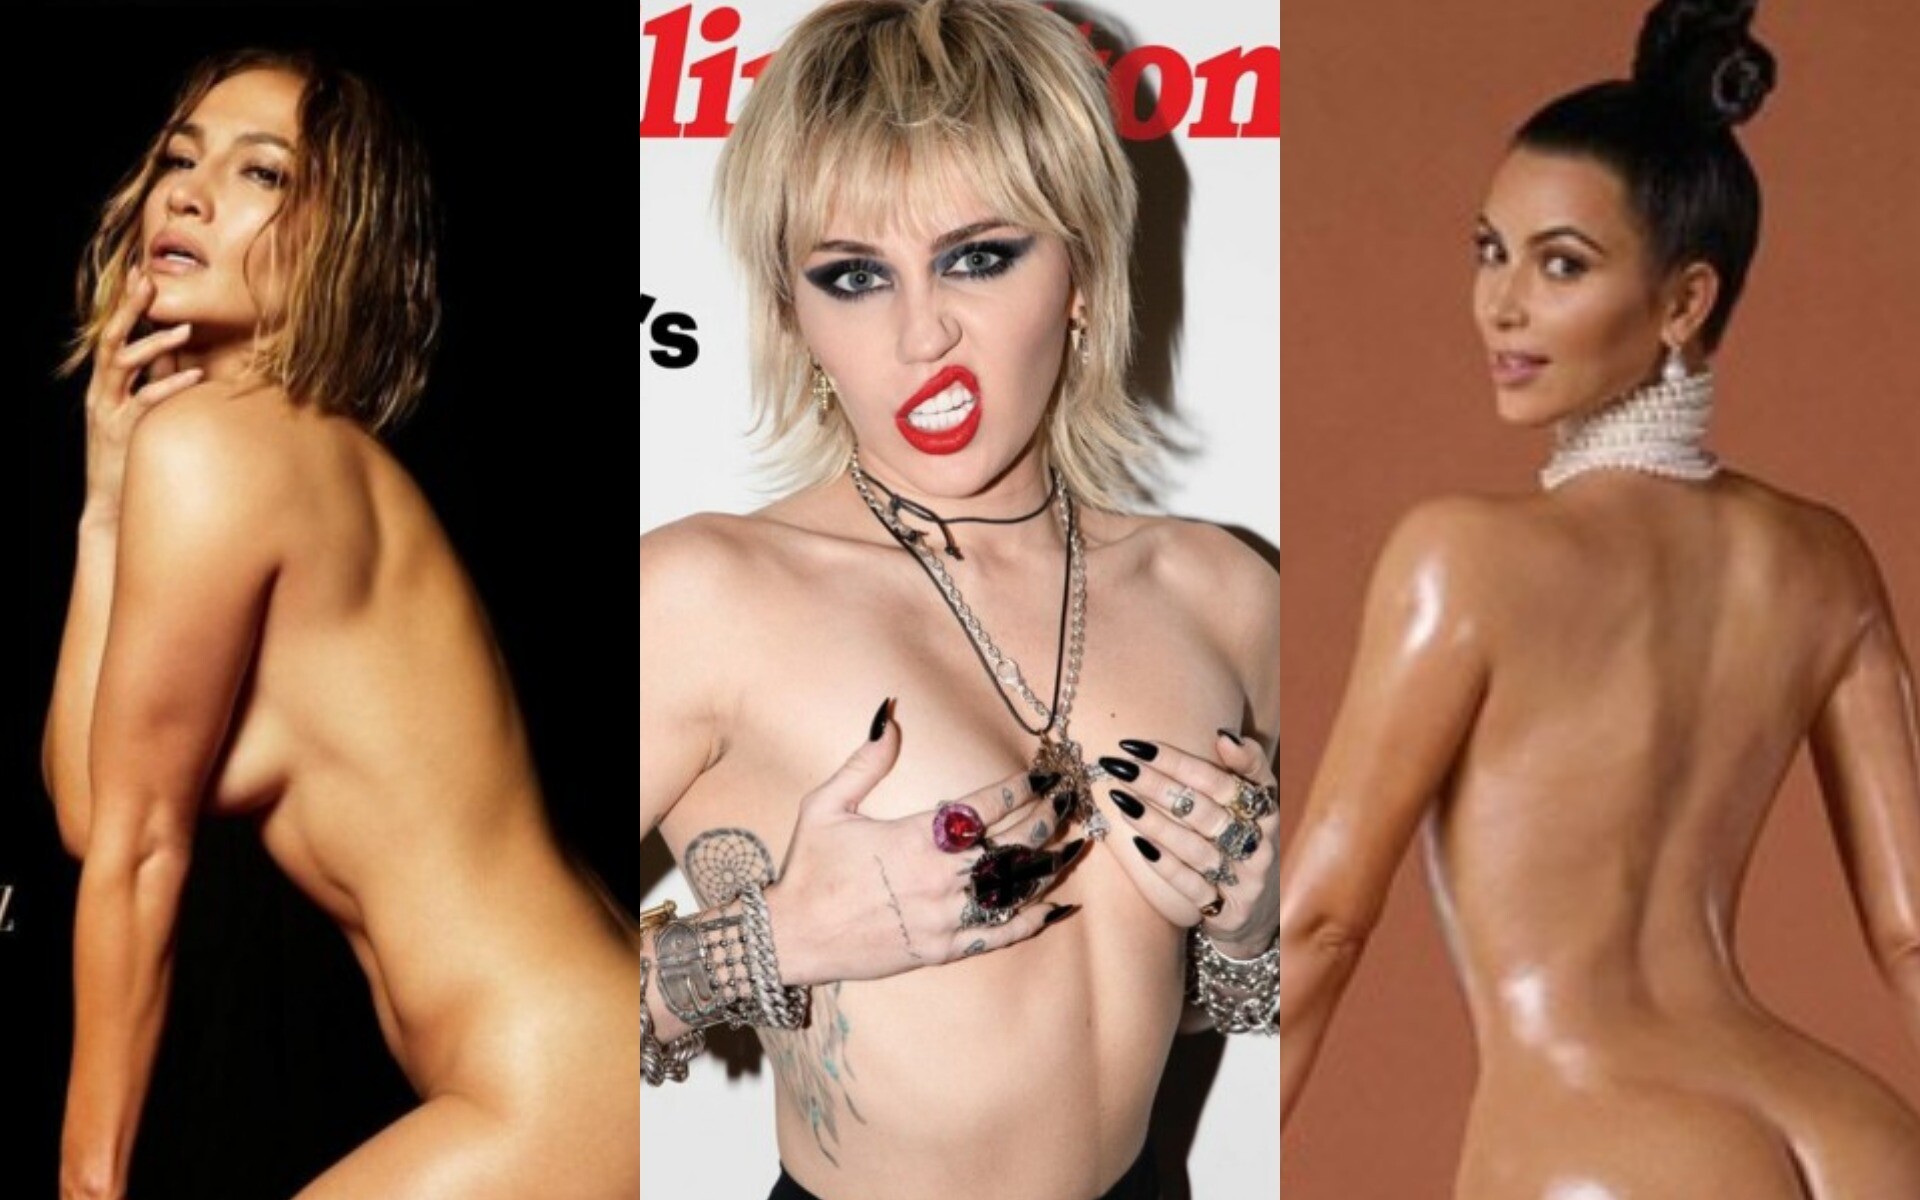 Майли Сайрус, Дженнифер Лопес, Наталия Орейро снялись голыми - фото -  Новости шоу бизнеса | Сегодня